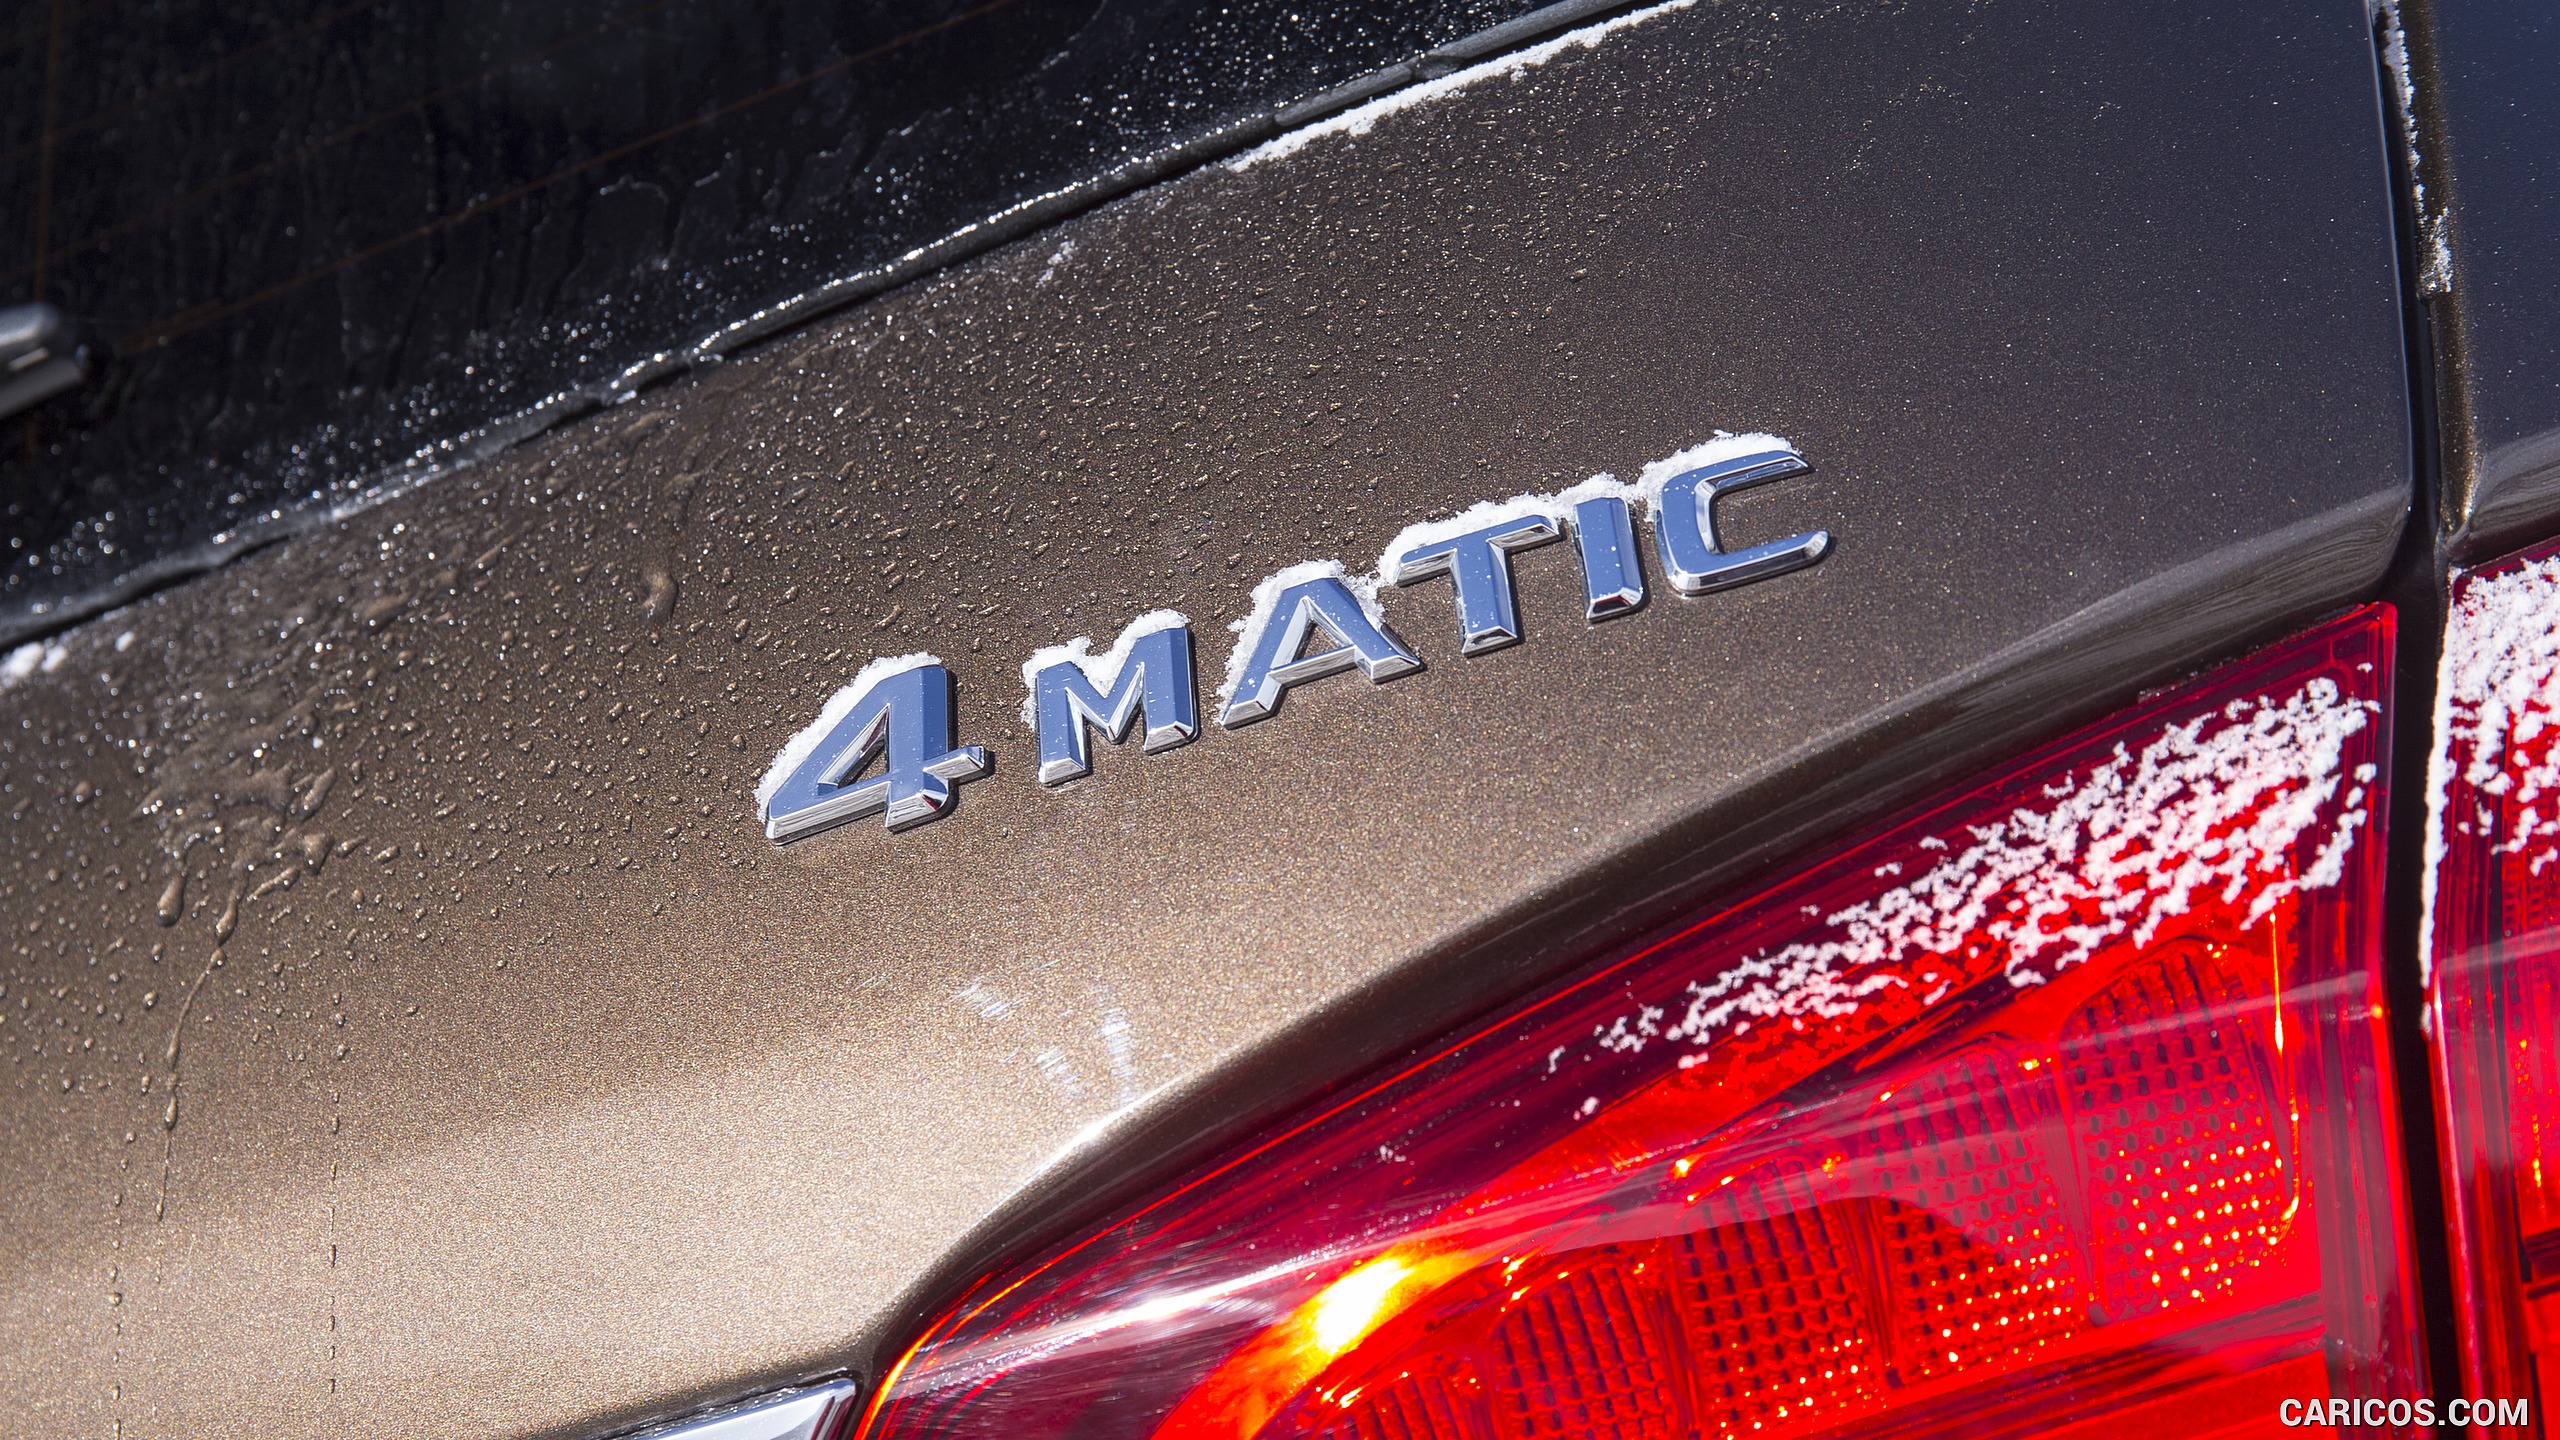 2017 Mercedes-Benz GLS 350d 4MATIC AMG Line - Badge, #199 of 255